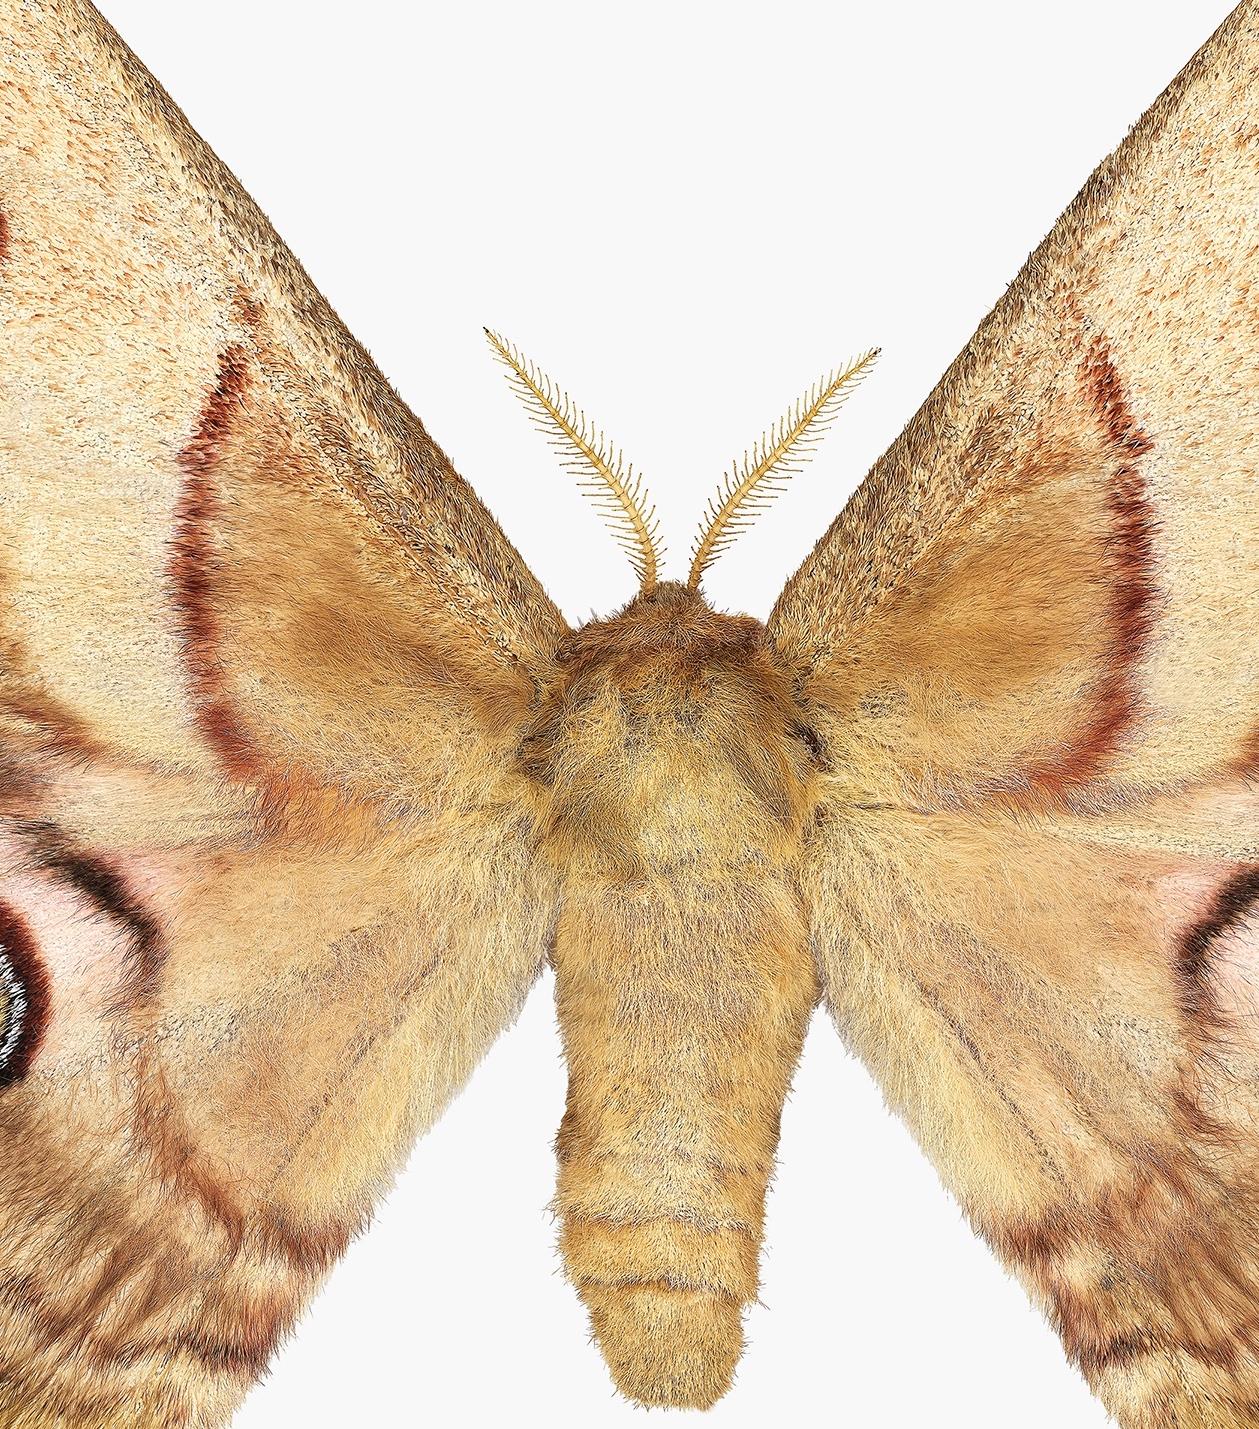 Caligula Japonica femelle, Brown doré, OCHRE papillon de nuit blanc, insecte ailé Nature - Contemporain Photograph par Joseph Scheer